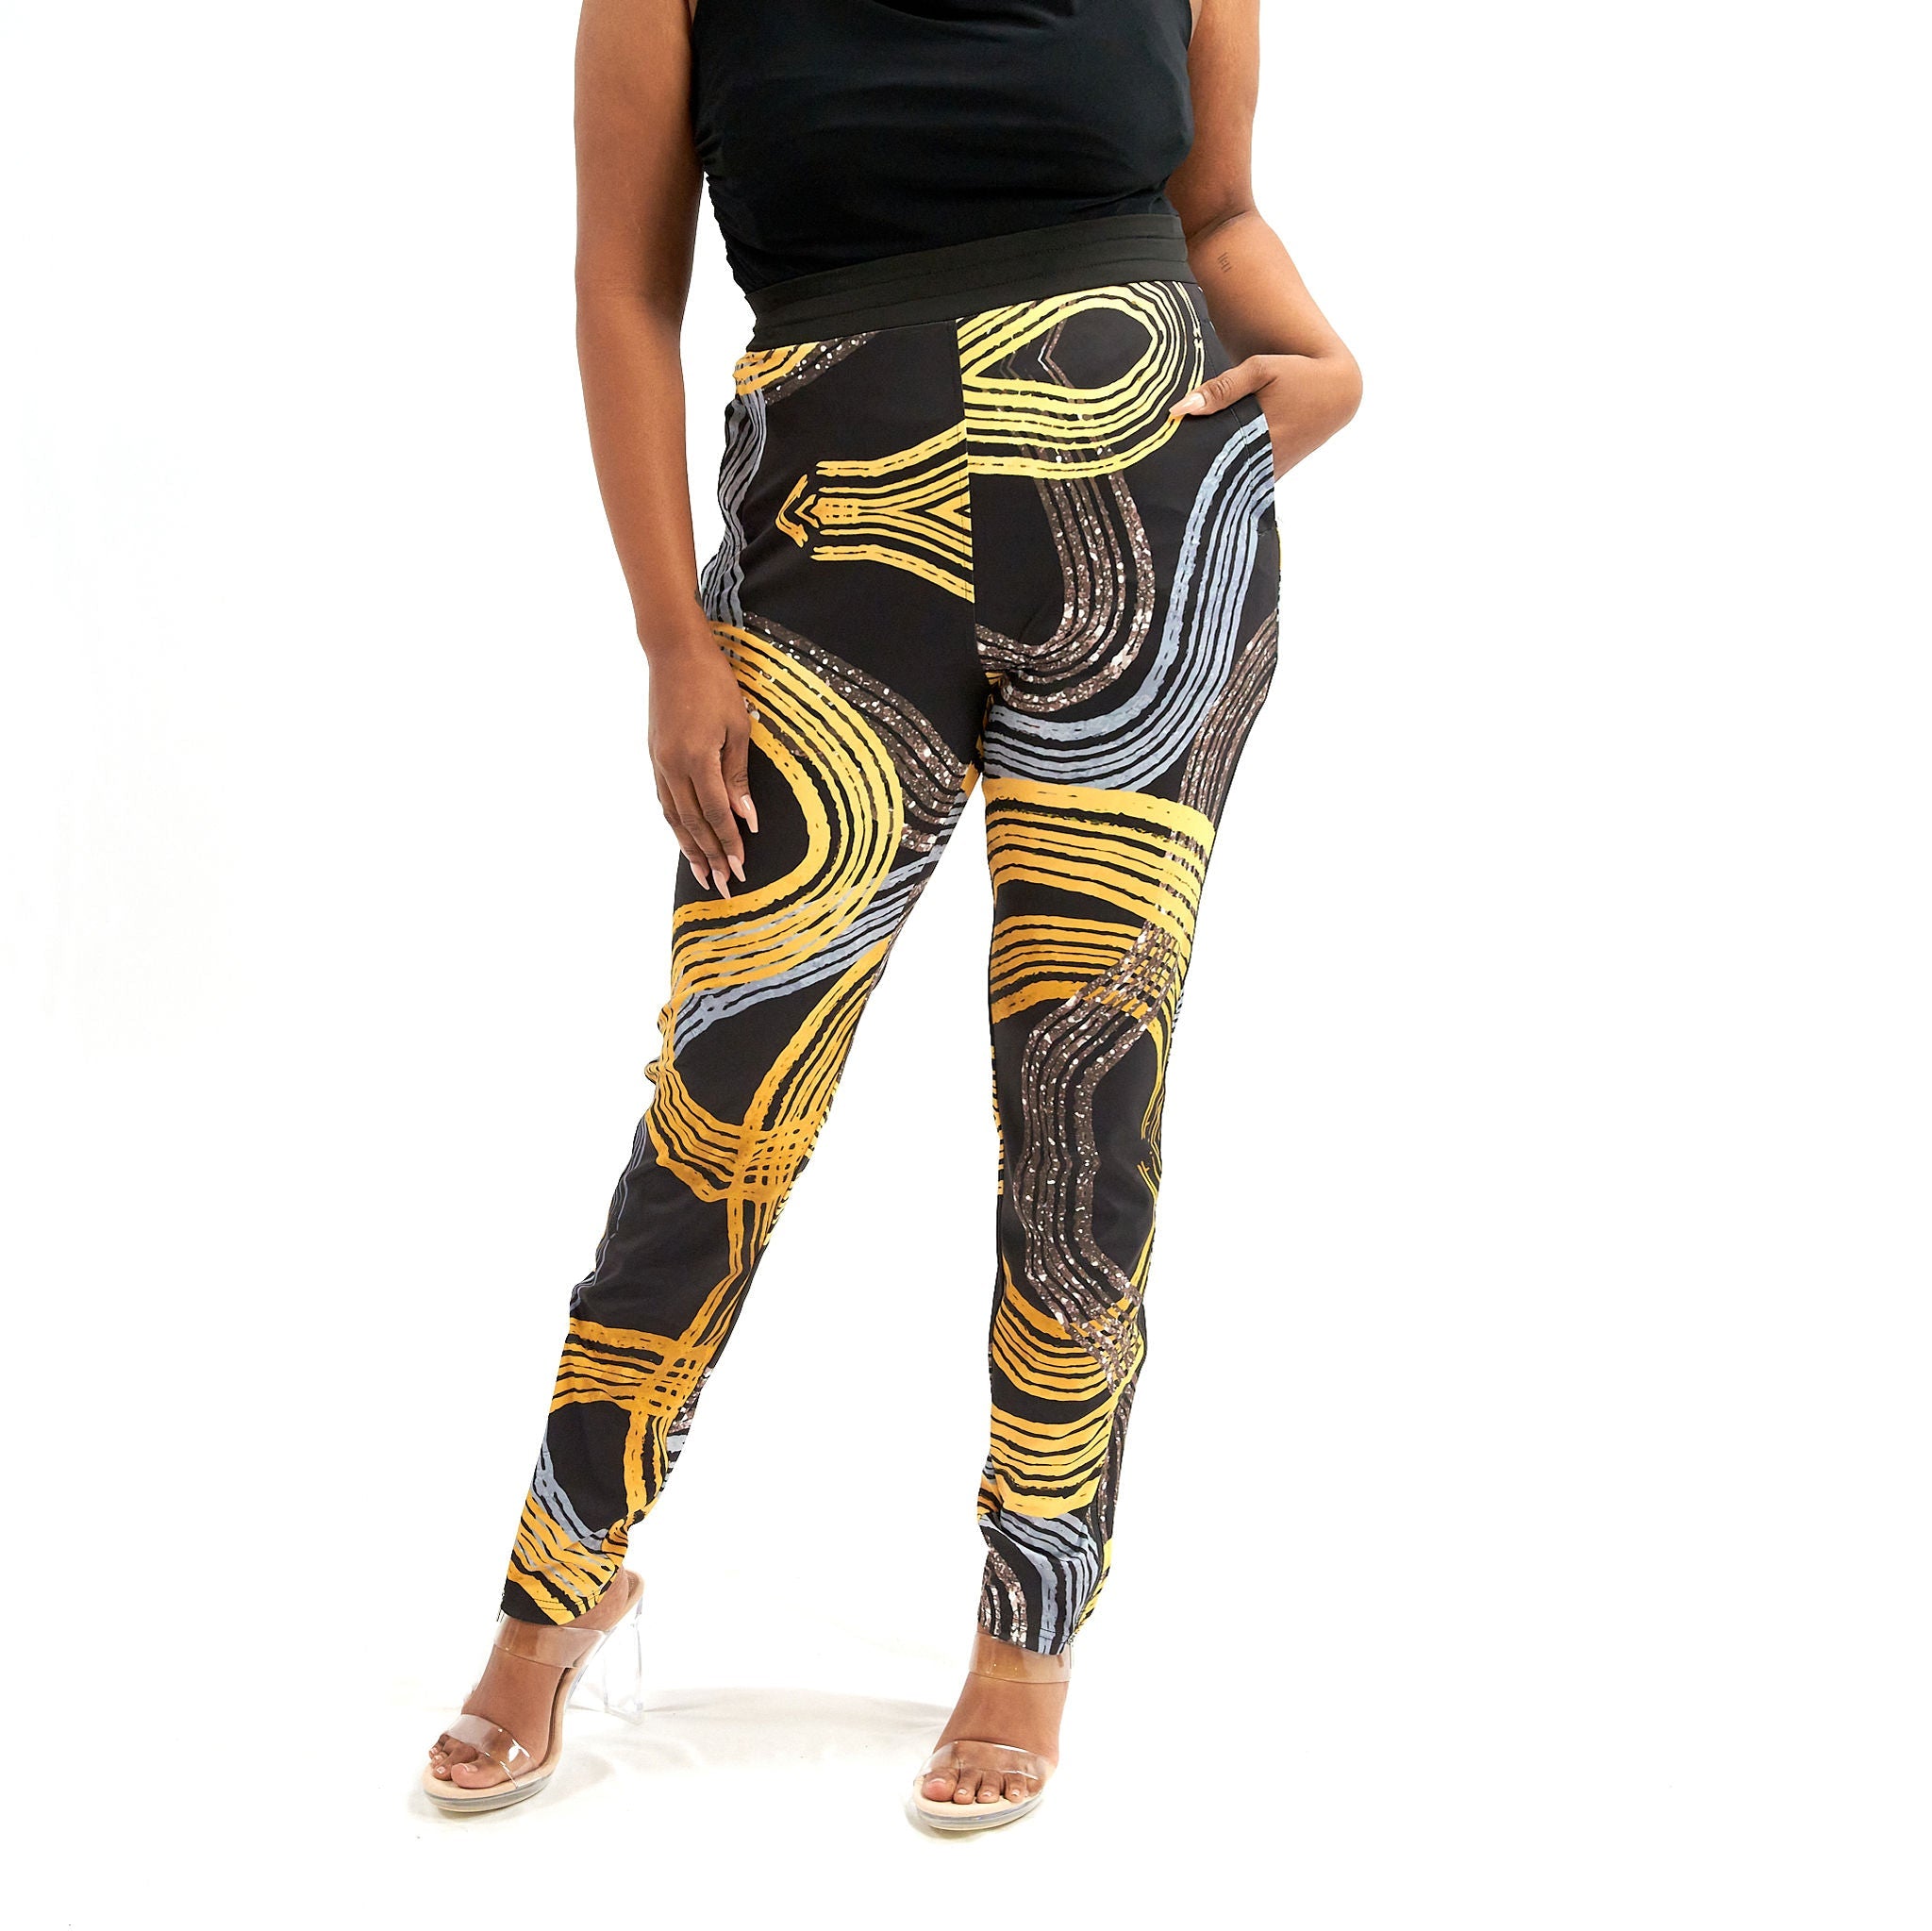 The Ulana Athleisure Pants- Golden Graffiti - Sassy Jones